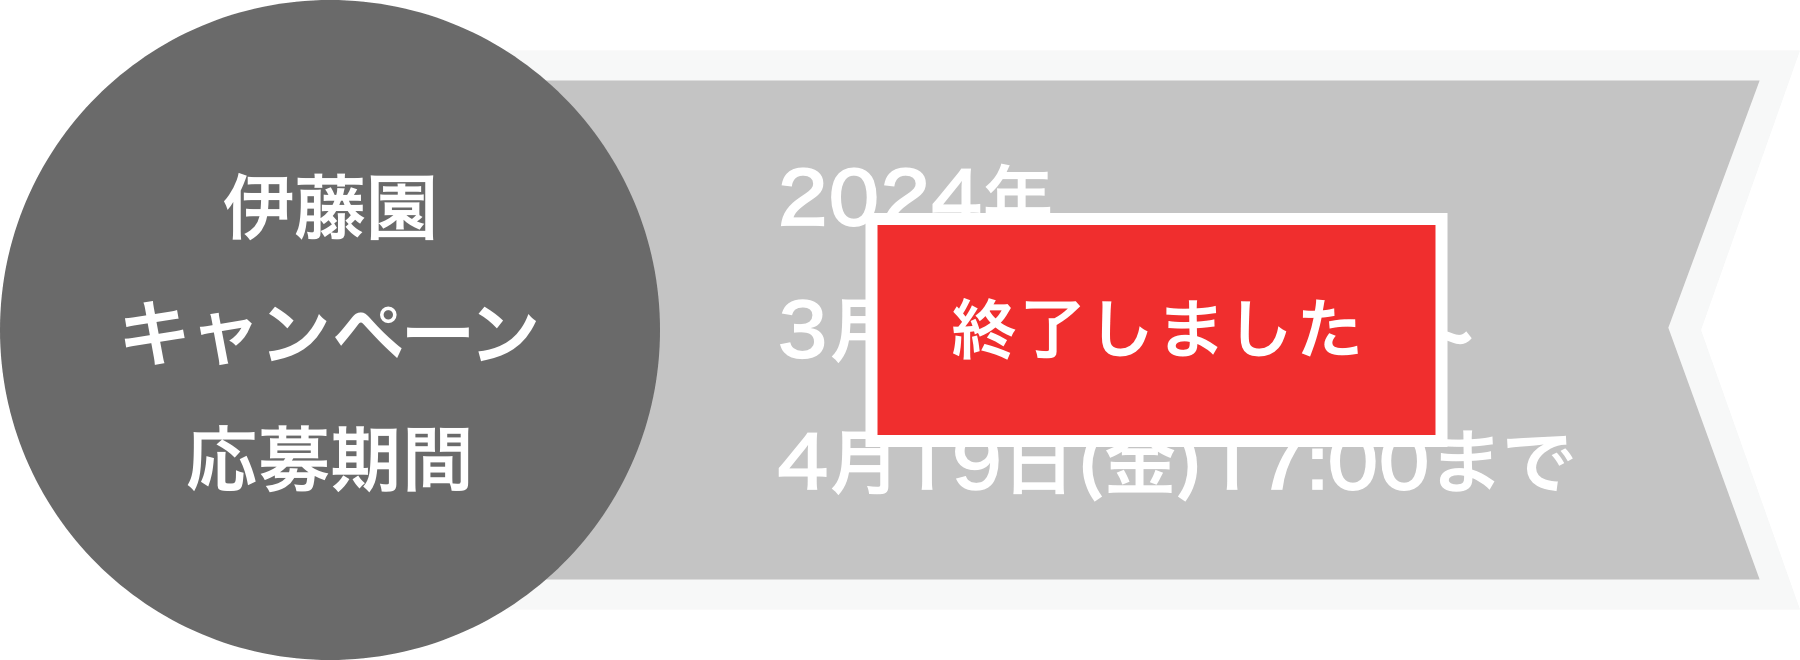 伊藤園キャンペーン応募期間 2023年3月24日(金)10:00〜4月21日(金) 17:00まで